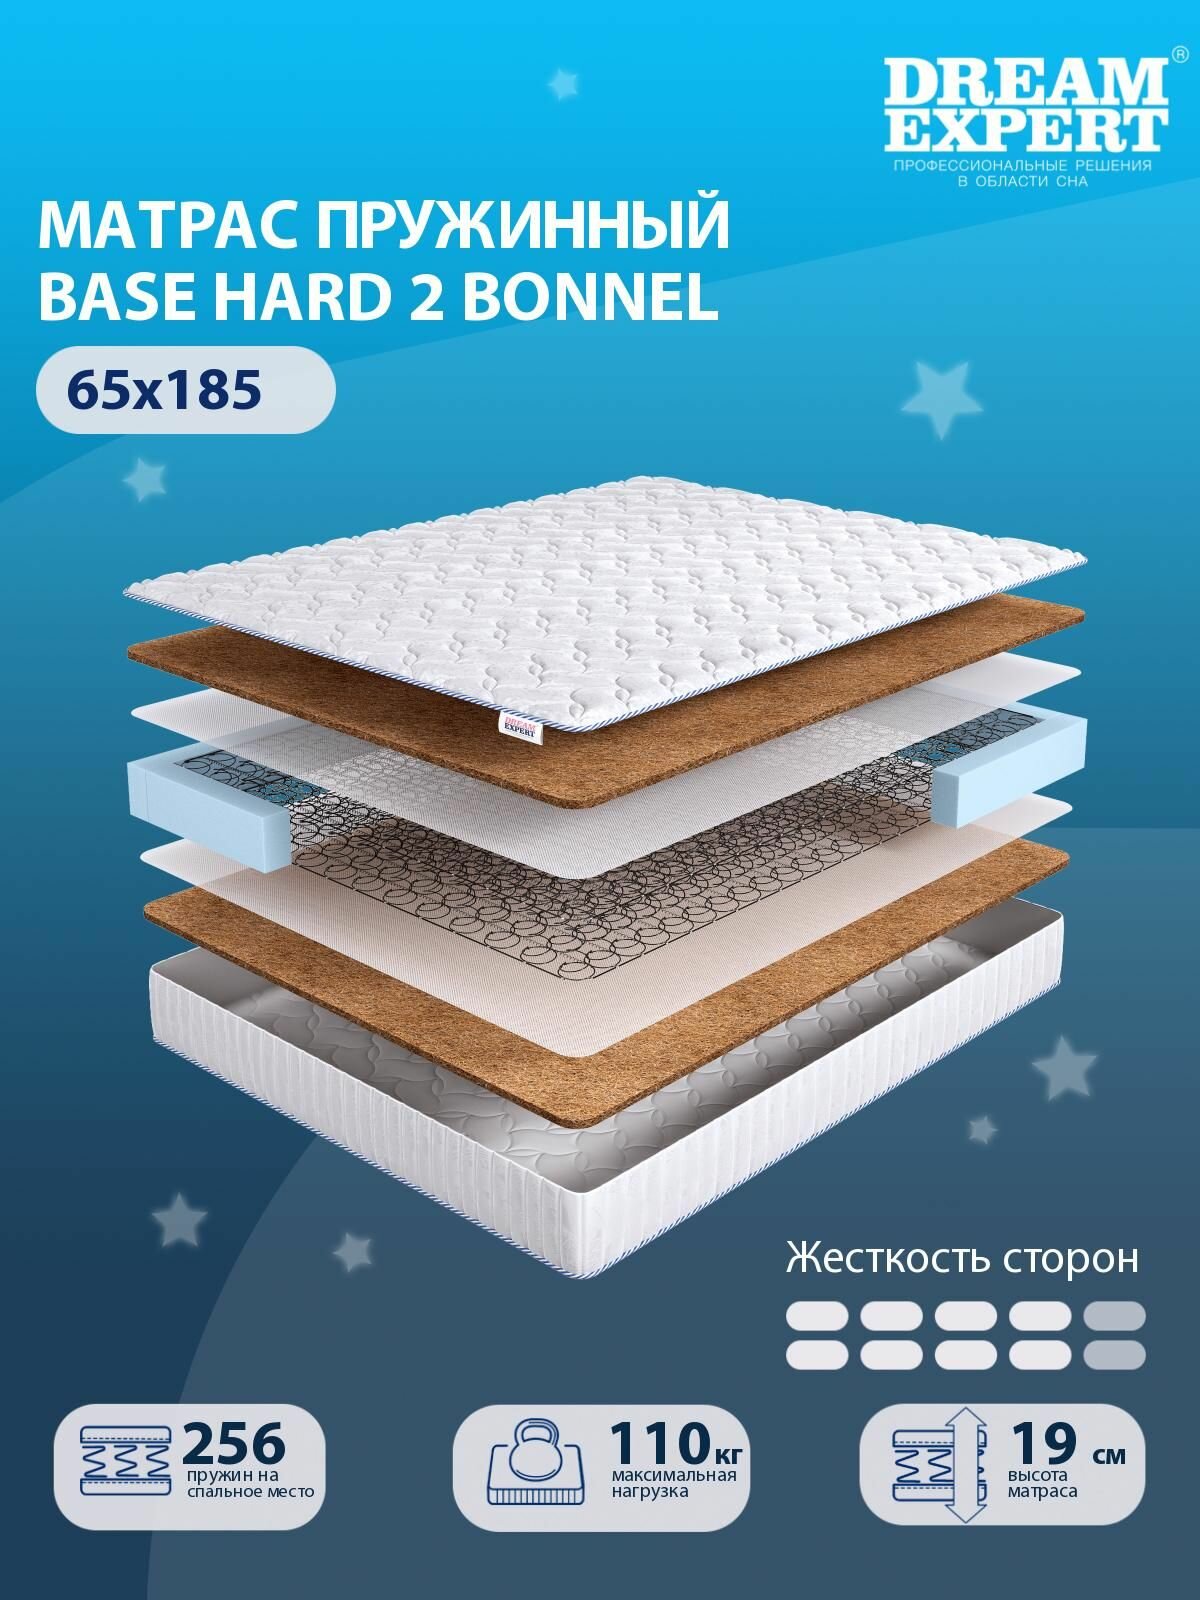 Матрас DreamExpert Base Hard 2 Bonnel выше средней жесткости, детский, зависимый пружинный блок, на кровать 65x185